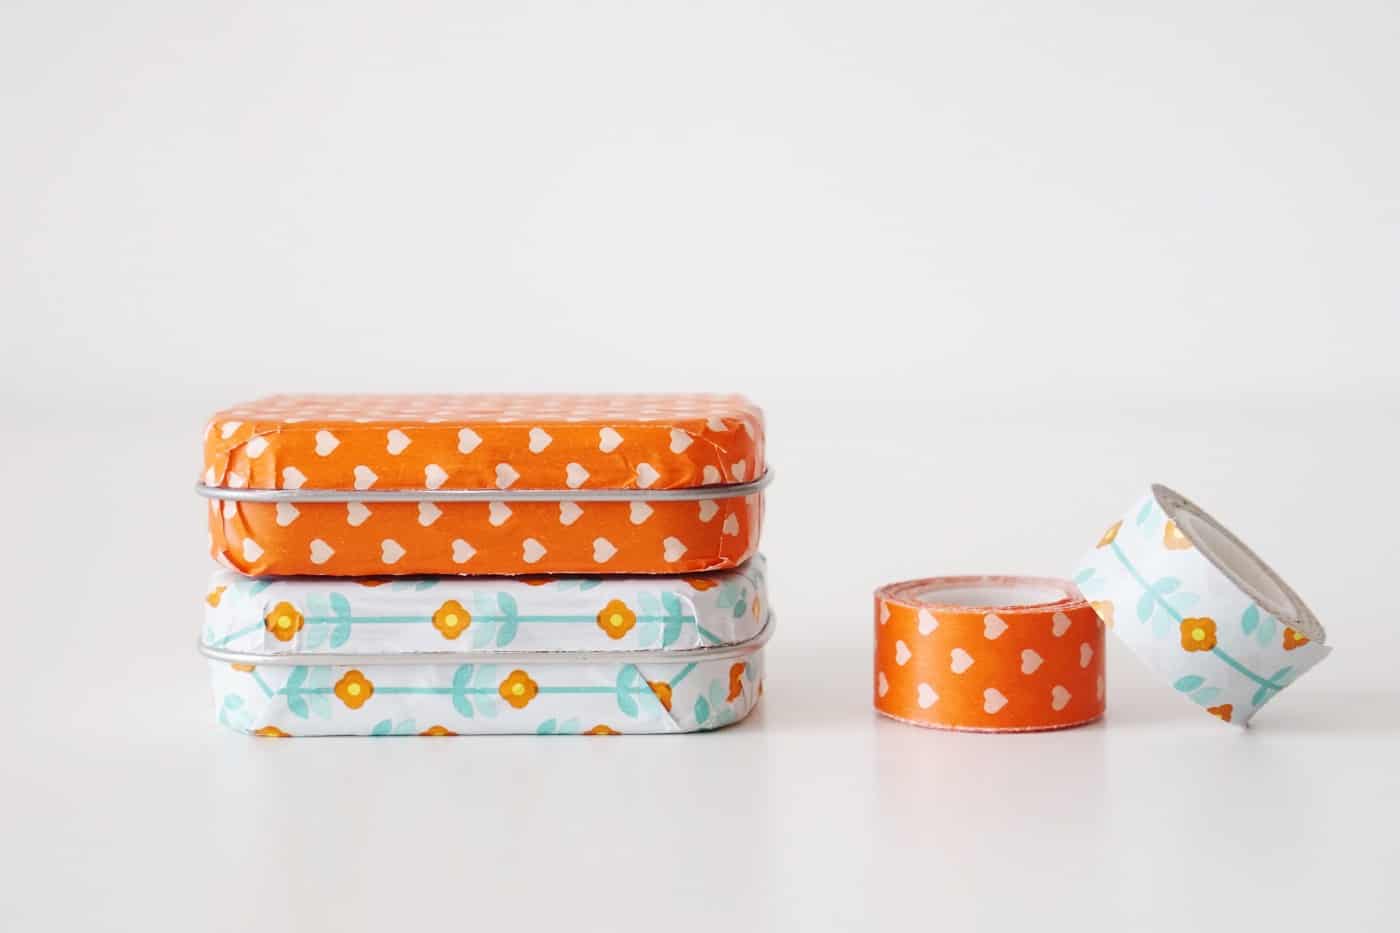 Si vous aimez les bricolages en washi tape, prenez votre motif préféré, une boîte de conserve à la menthe usagée, et transformez-la en un mignon petit support ! C'est un bricolage upcyclé tellement amusant et facile !